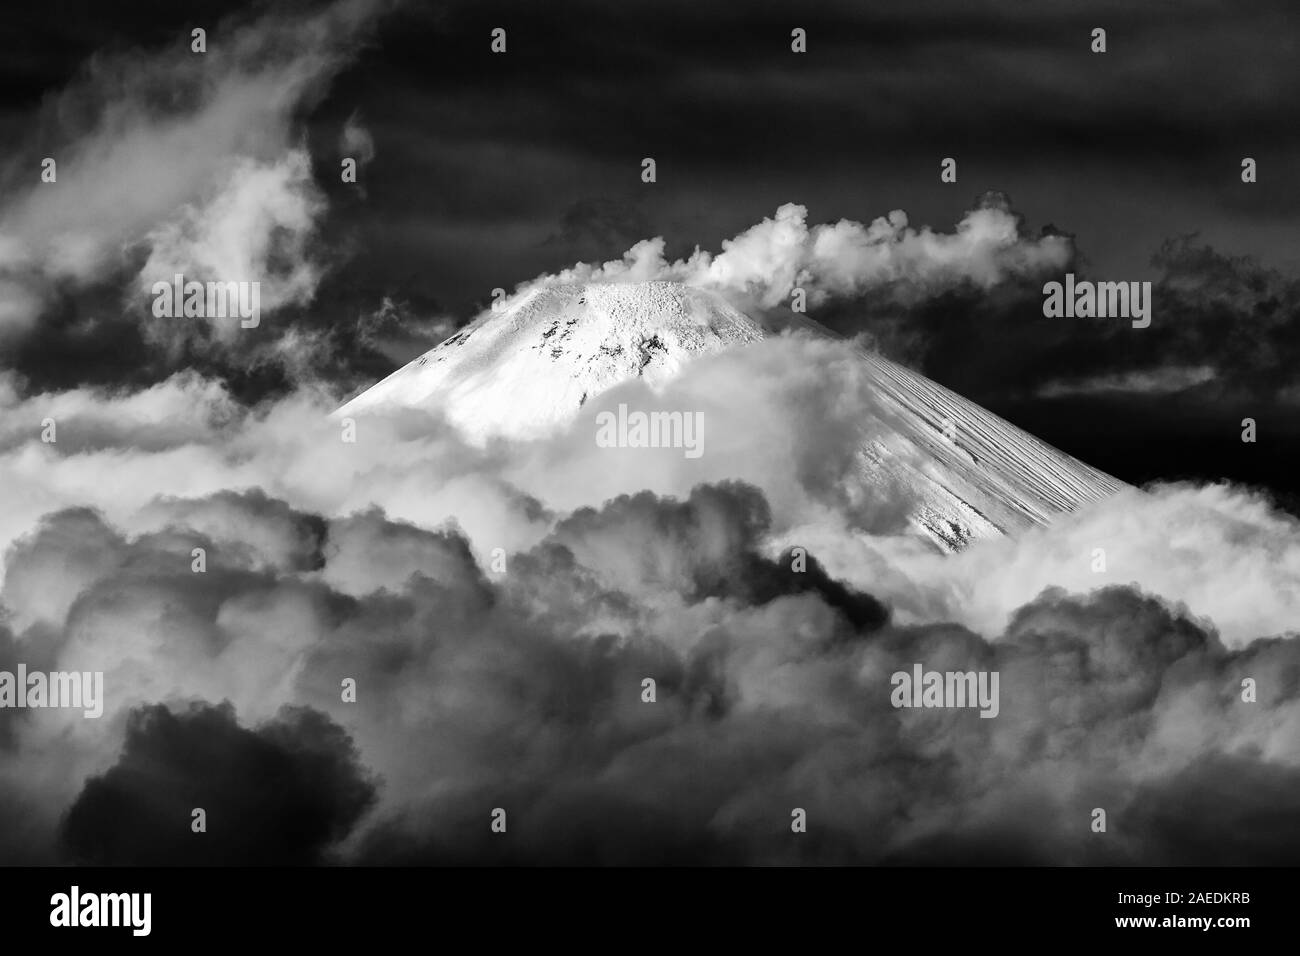 La péninsule du Kamtchatka, volcan actif en hiver vue Avachinskaya Sopka, paysage volcanique spectaculaire - l'activité du volcan Avacha : vapeur, gaz, des cendres Banque D'Images